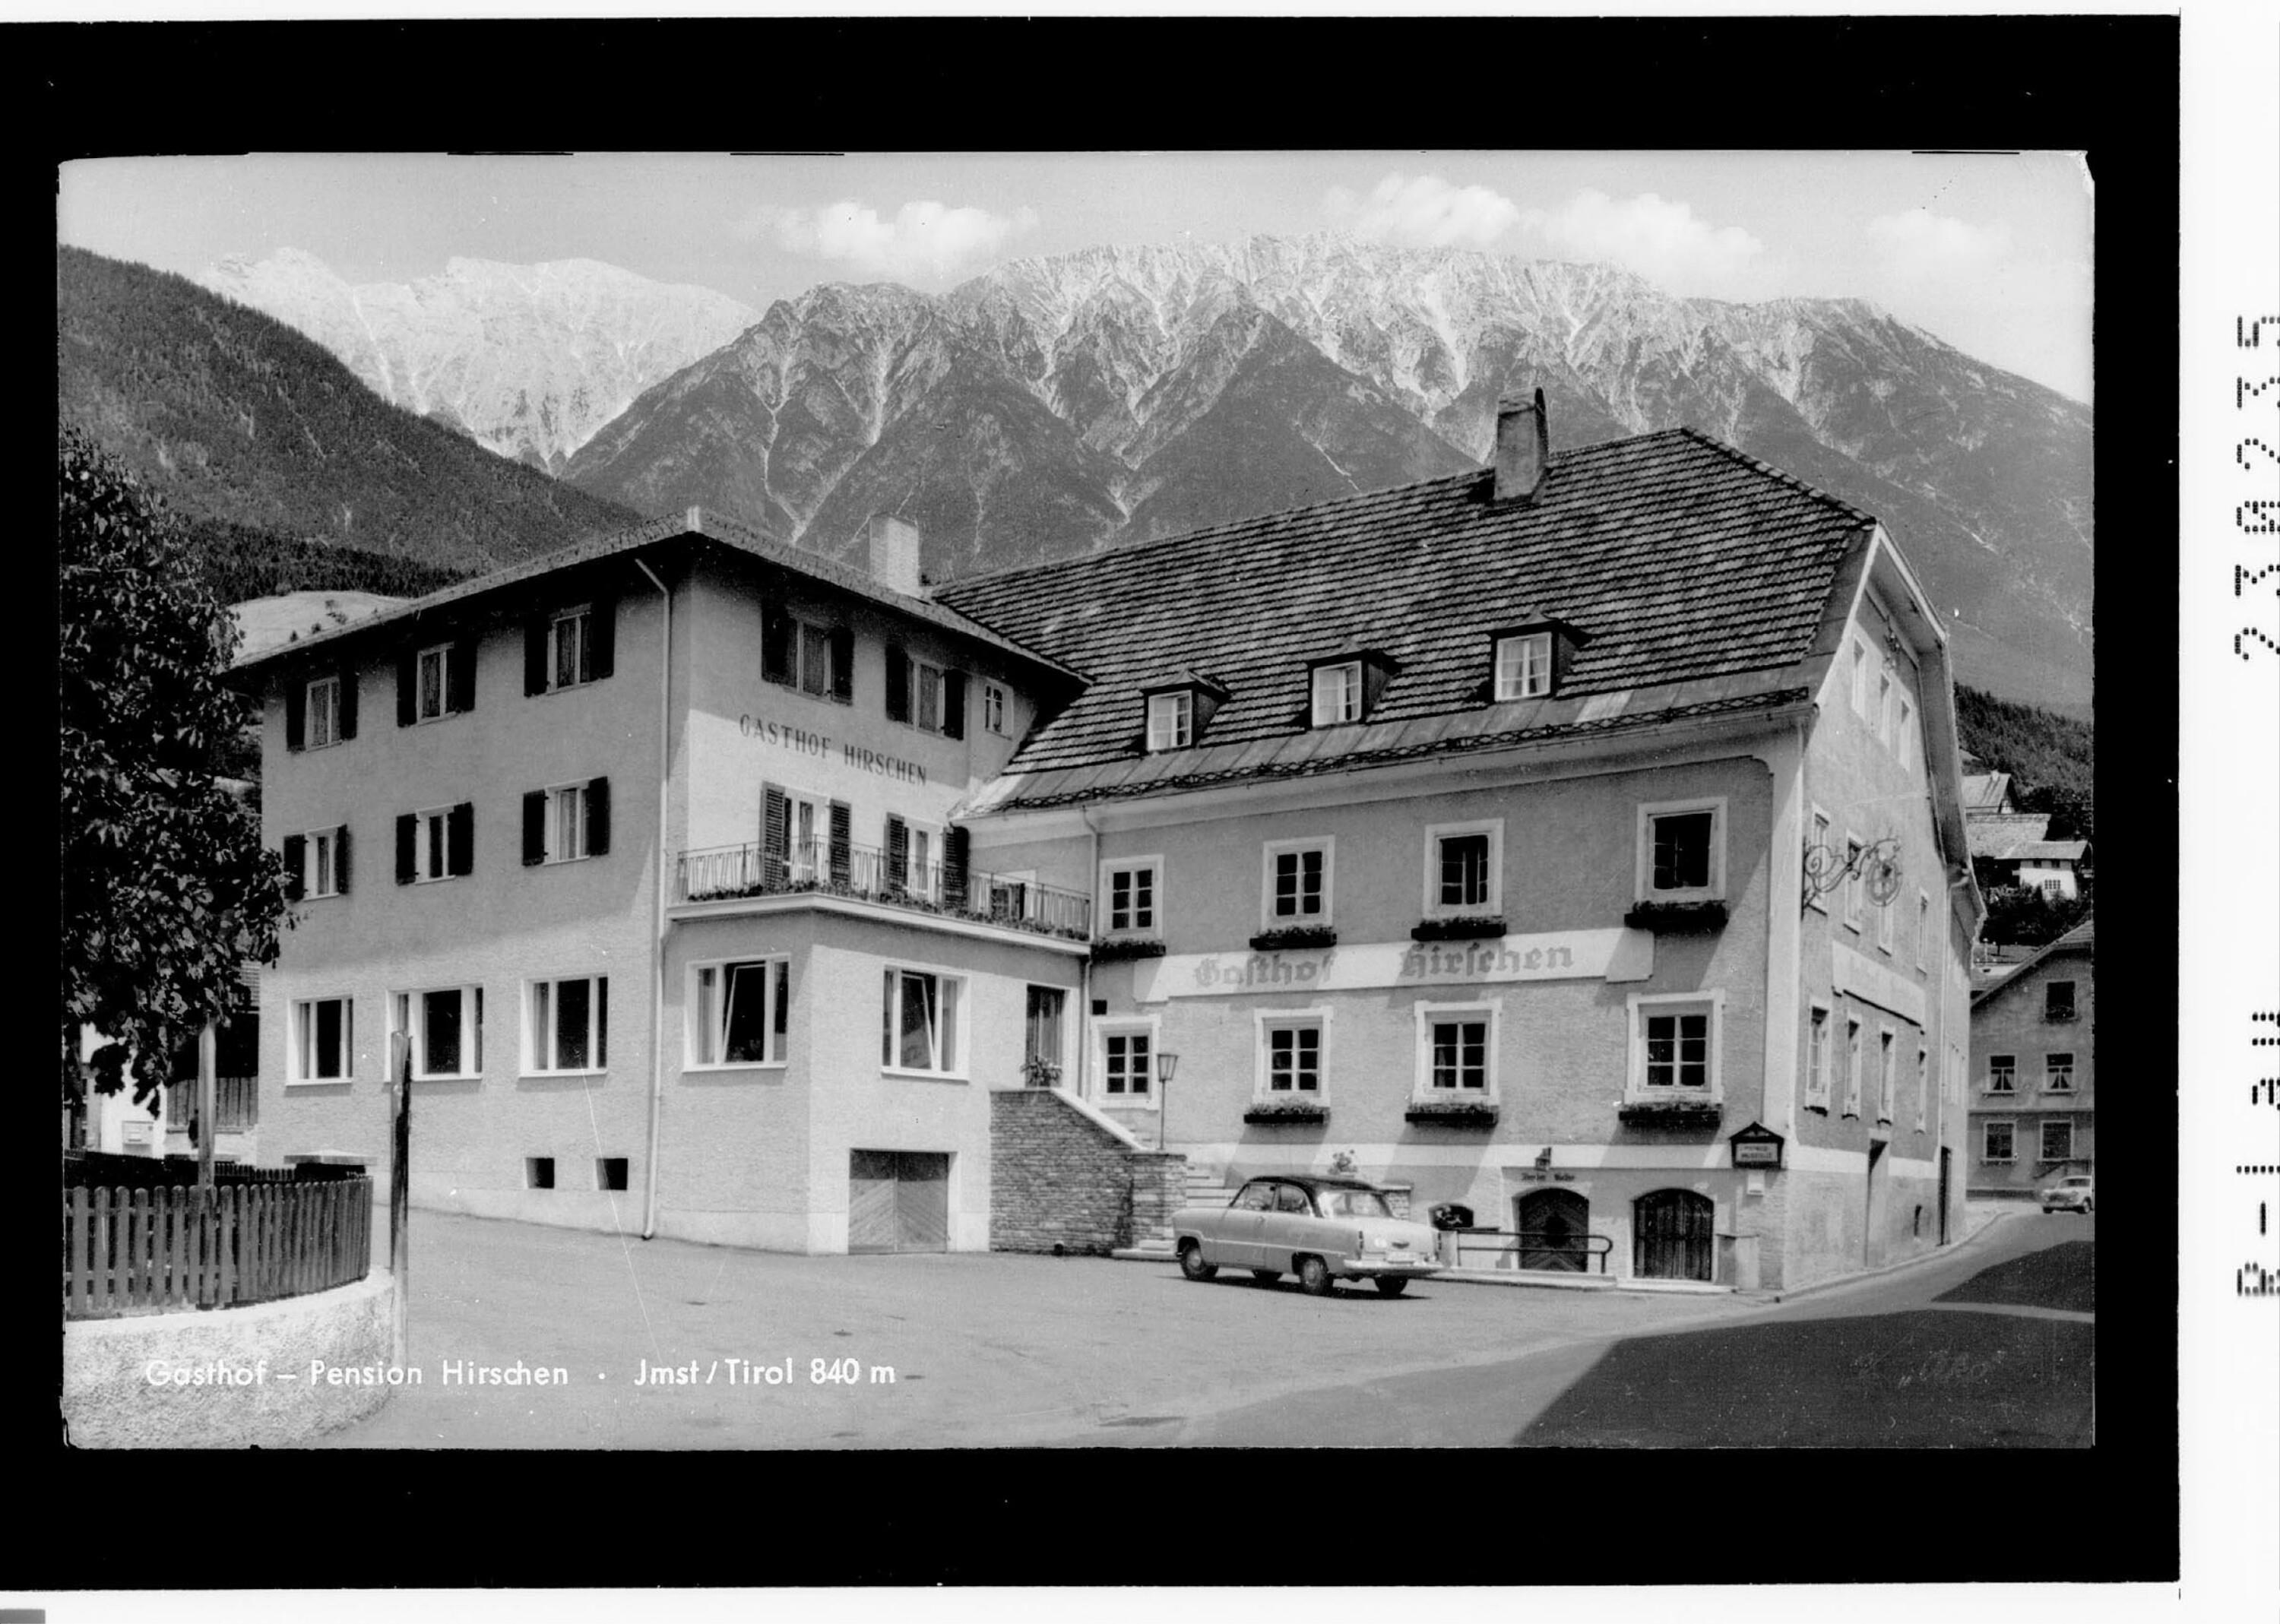 Gasthof - Pension Hirschen / Imst / Tirol 840 m></div>


    <hr>
    <div class=